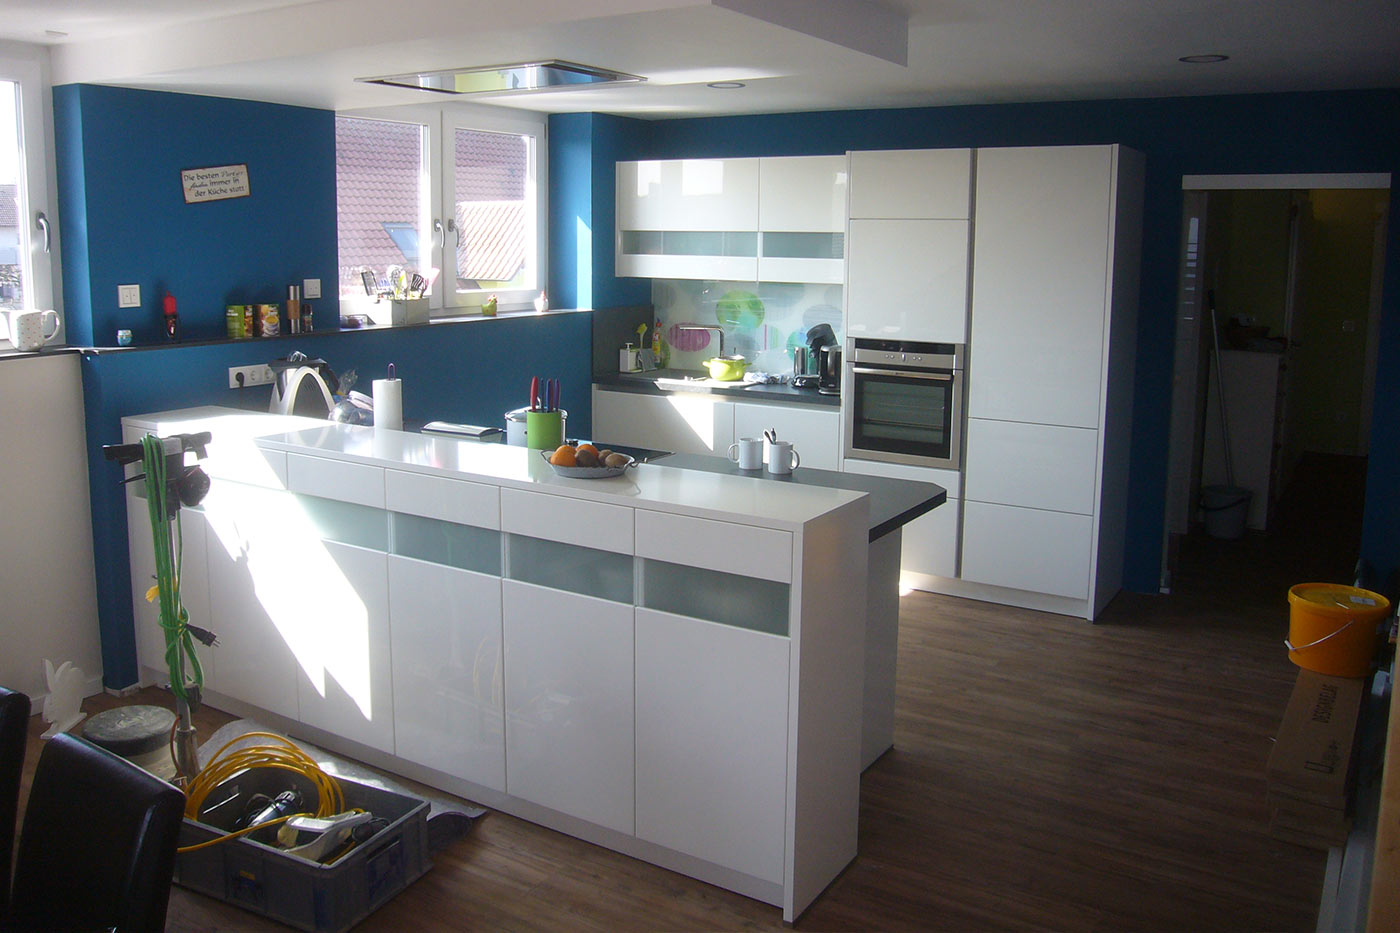 Moderne Küche in der Trendfarbe blau.